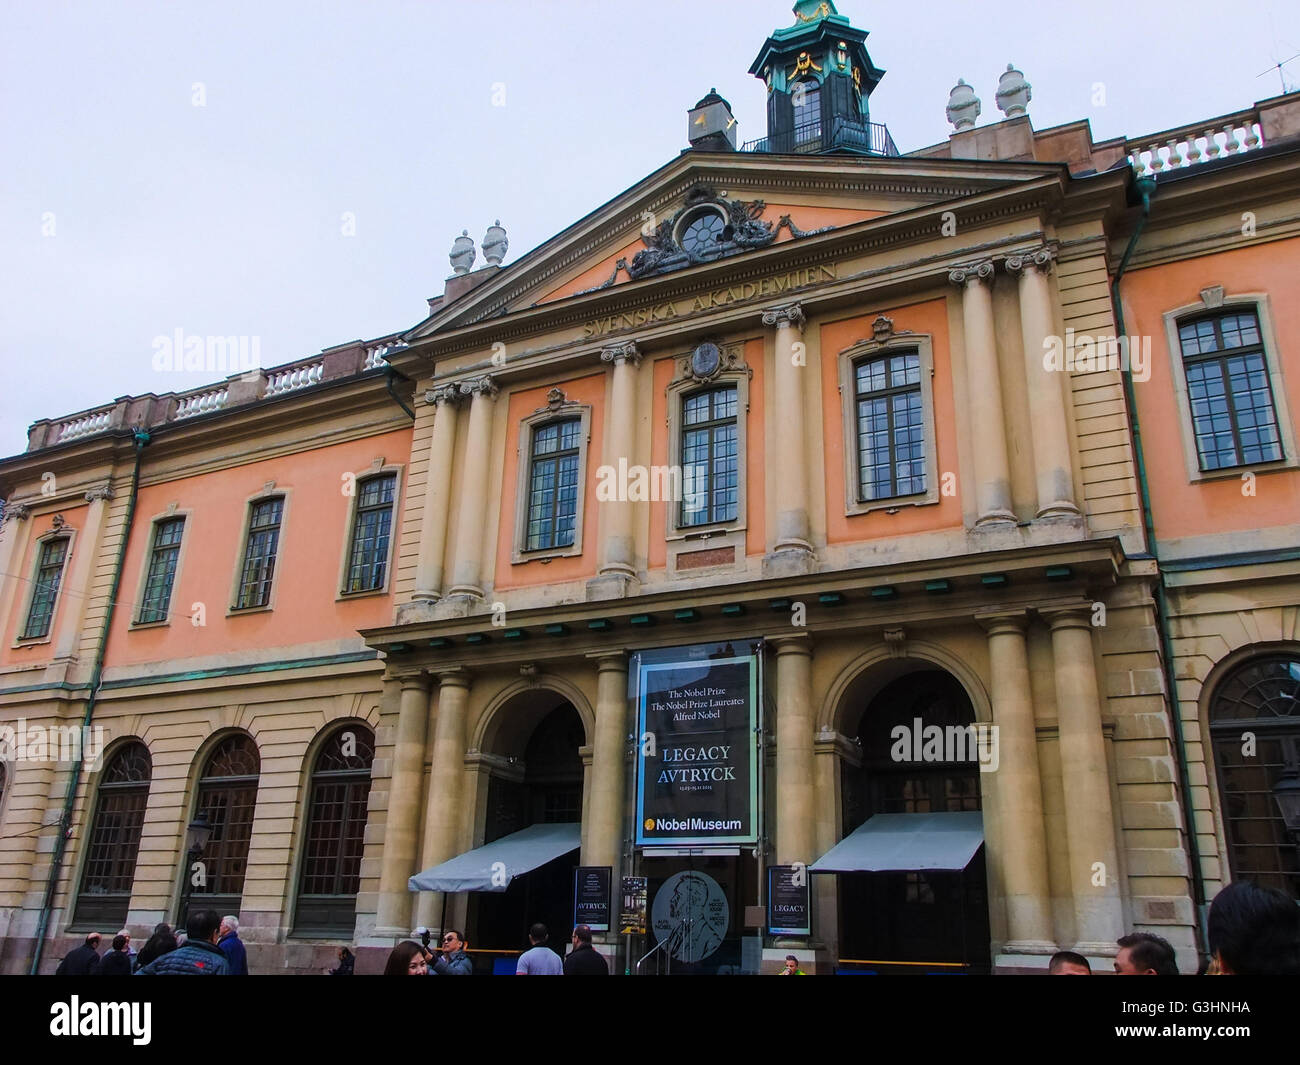 Svenska Akademien, l'institution culturelle située à vieille ville de Stockholm, Suède. Banque D'Images